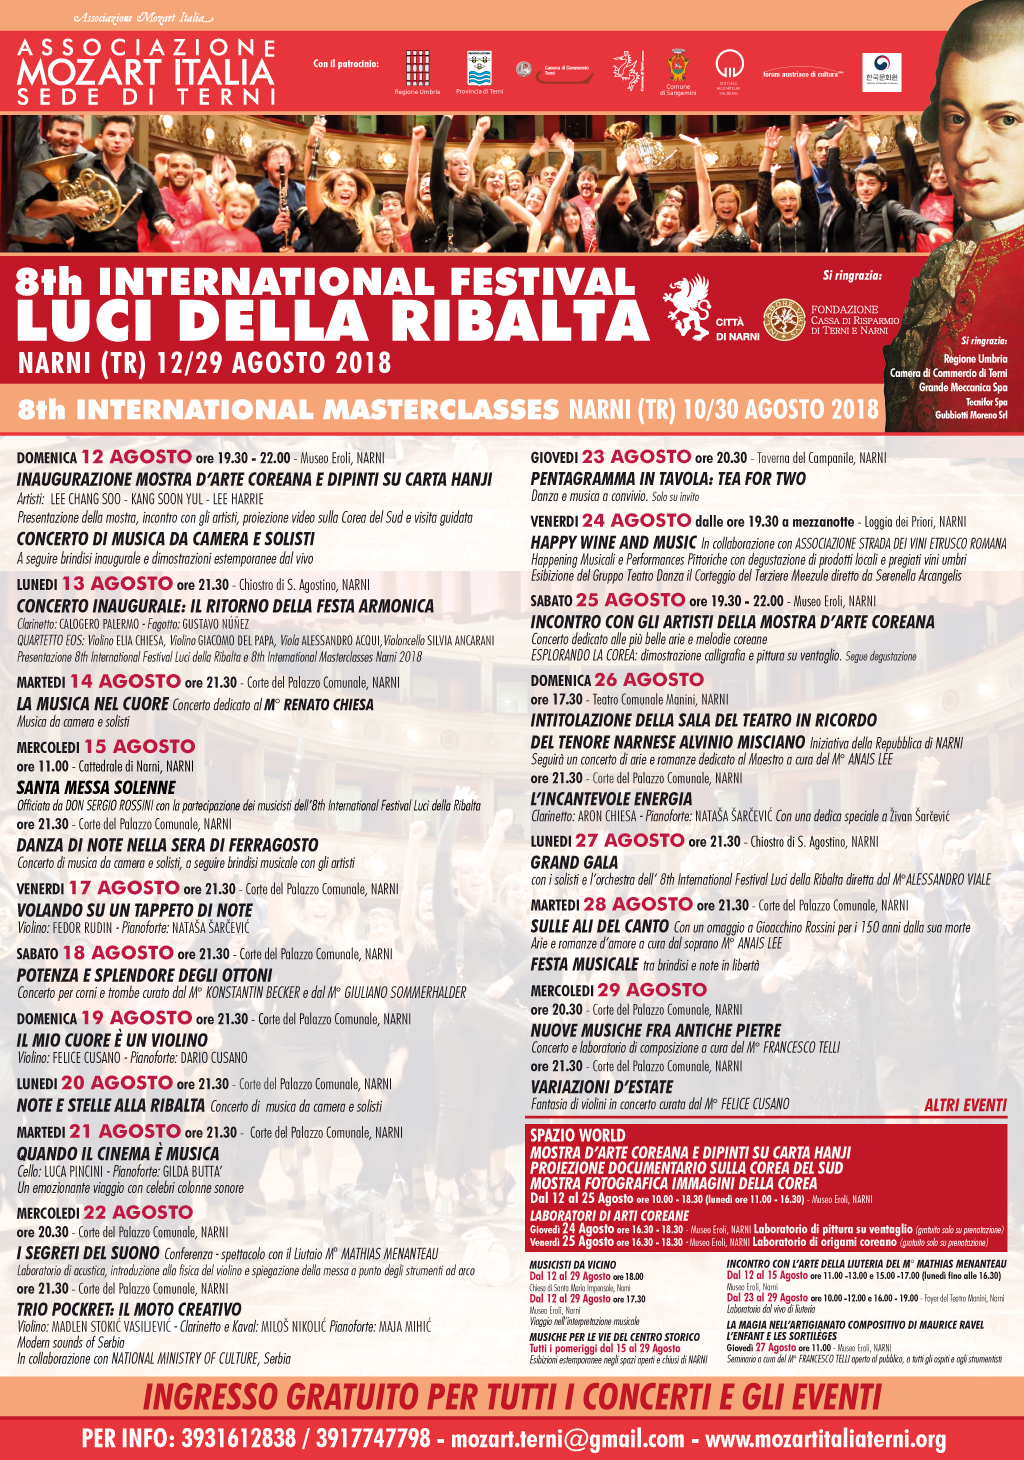 8TH INTERNATIONAL FESTIVAL LUCI DELLA RIBALTA